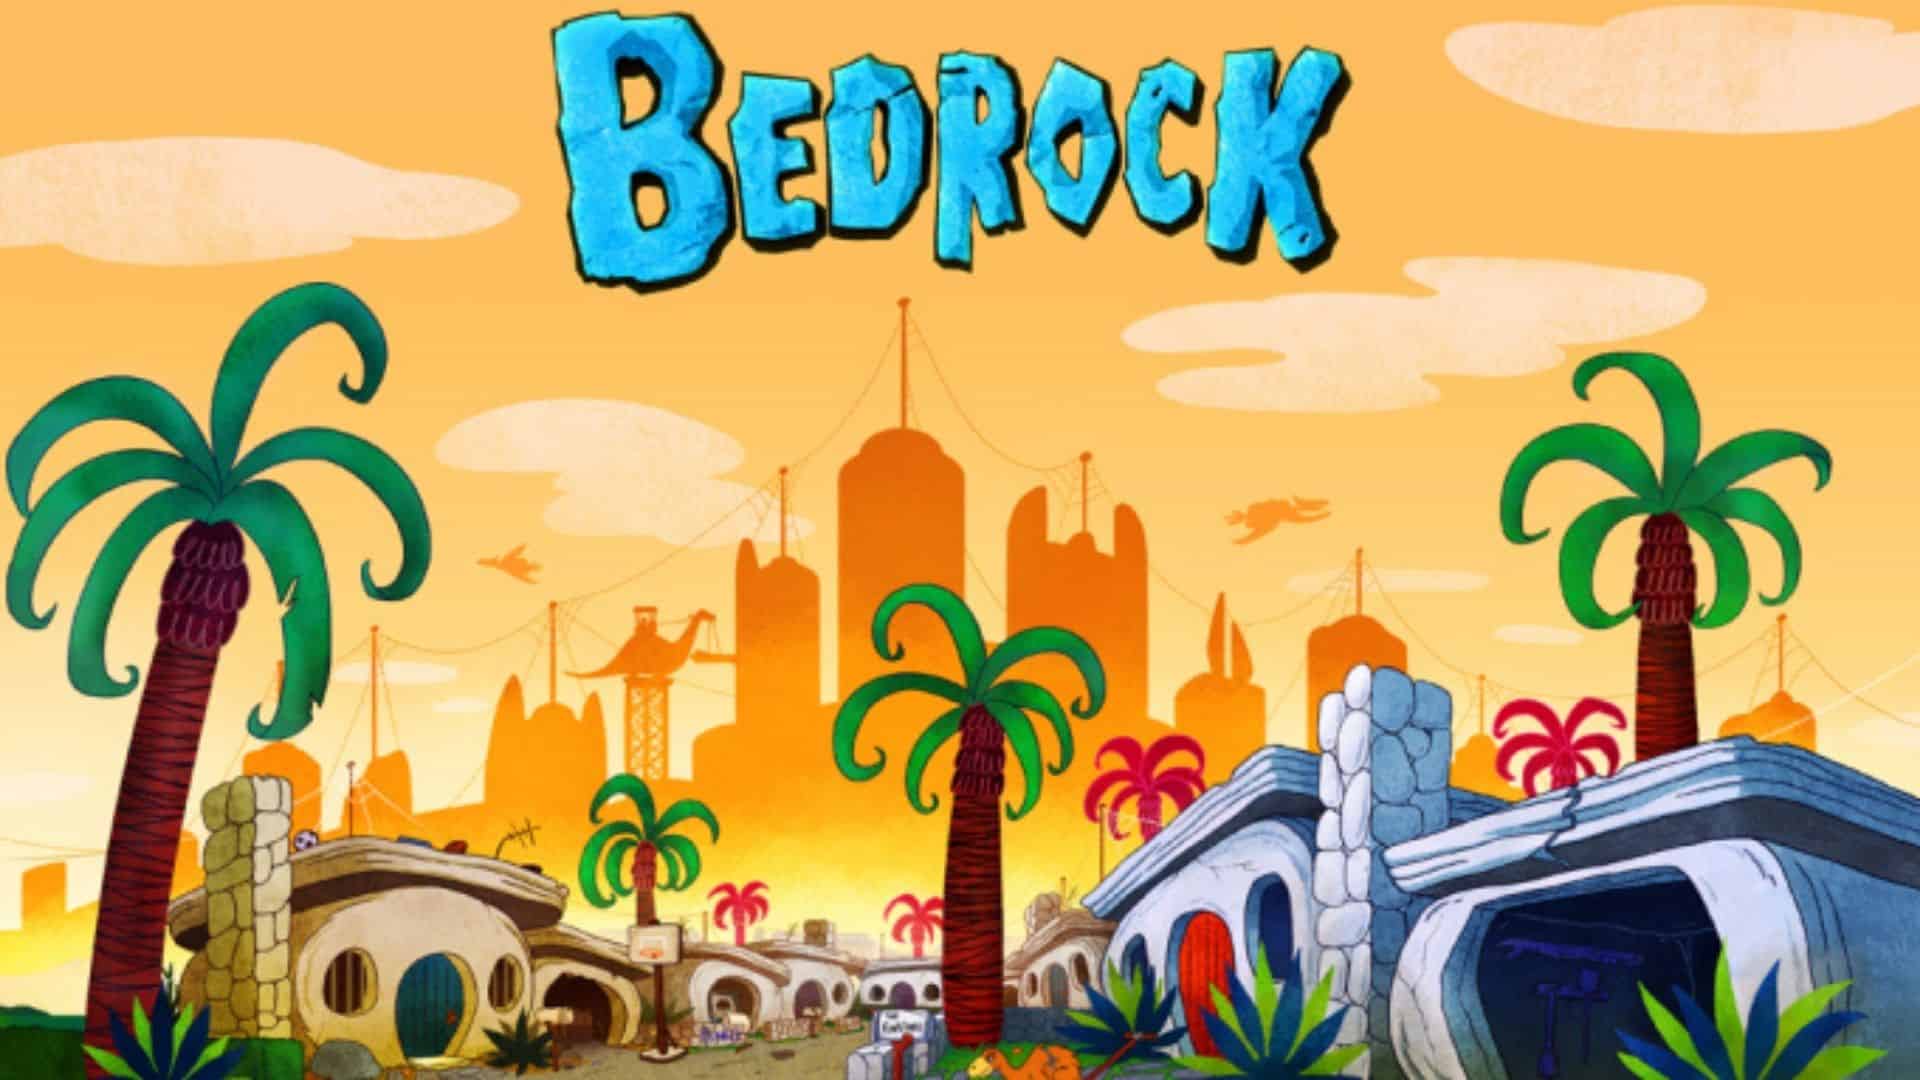 Bedrock sequel I Flintstones